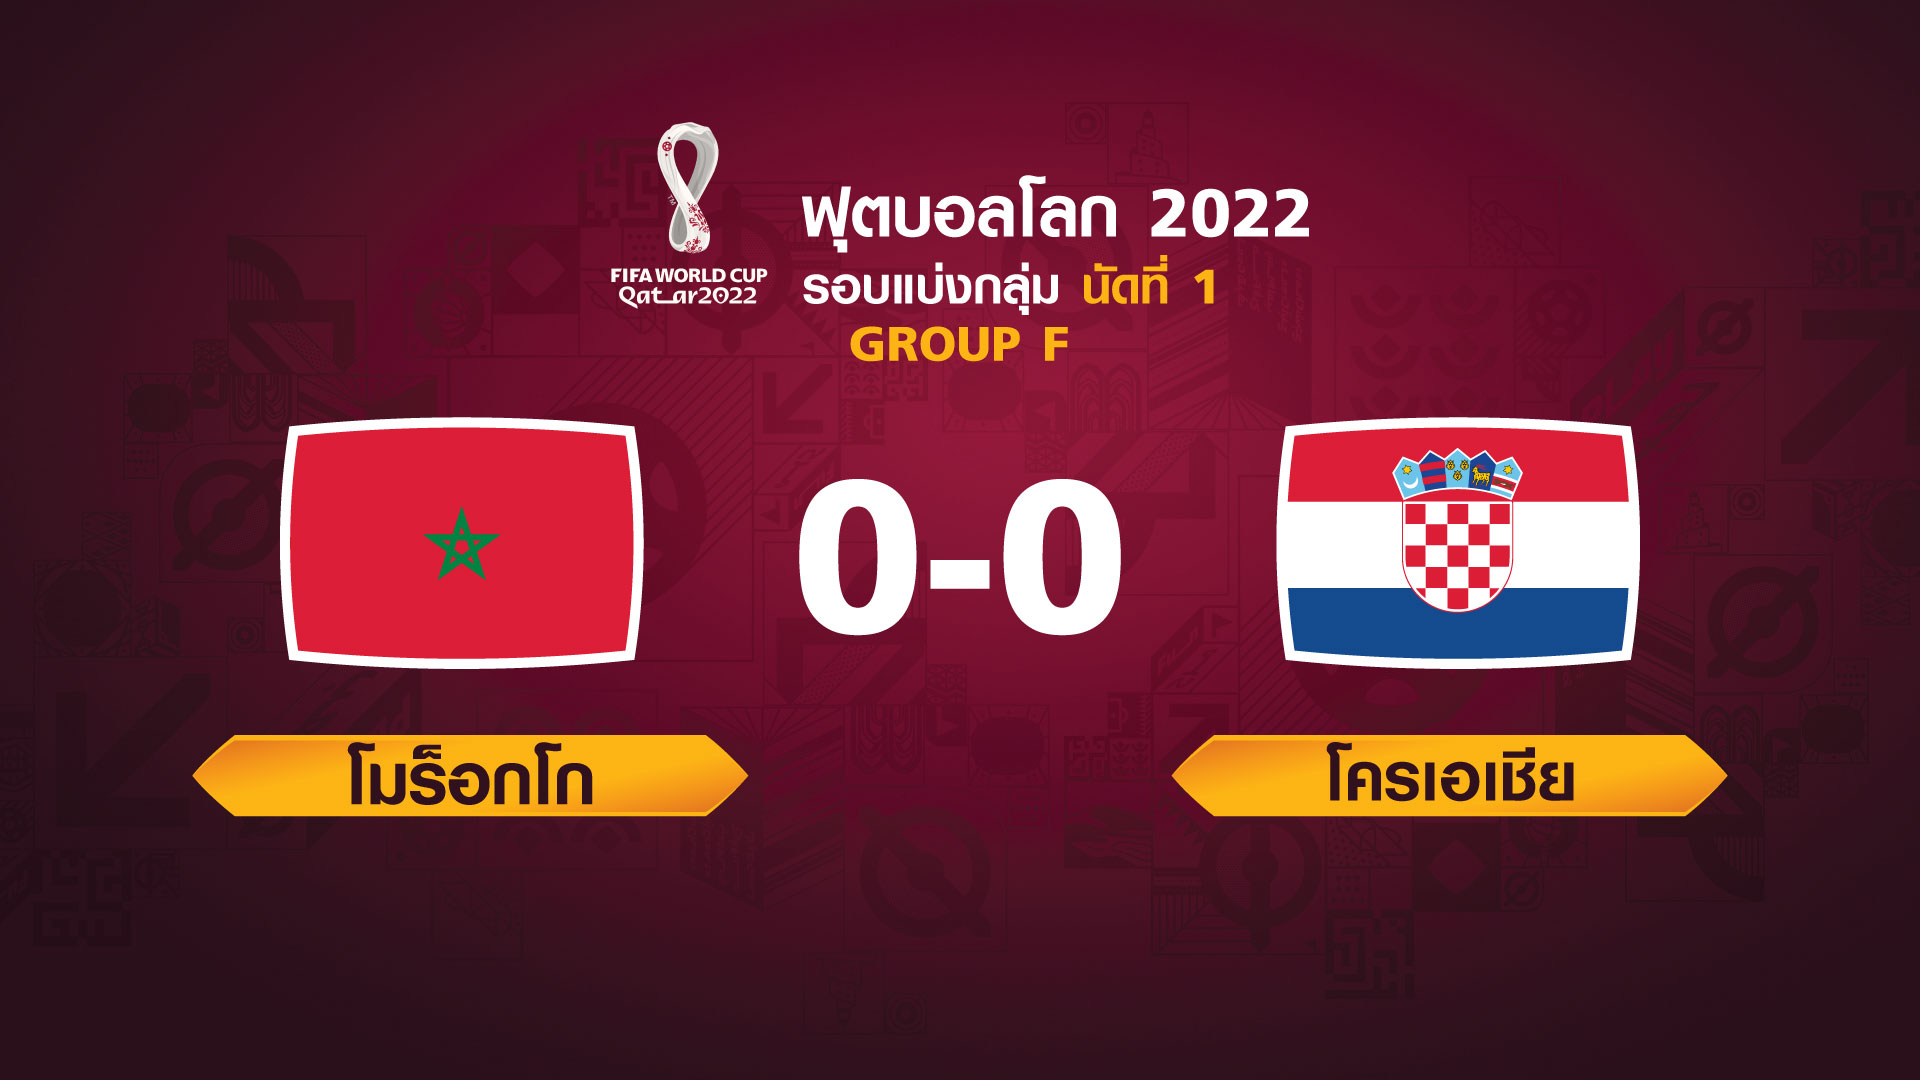 ฟุตบอลโลก 2022 รอบแบ่งกลุ่ม นัดแรก ระหว่าง Morocco vs Croatia